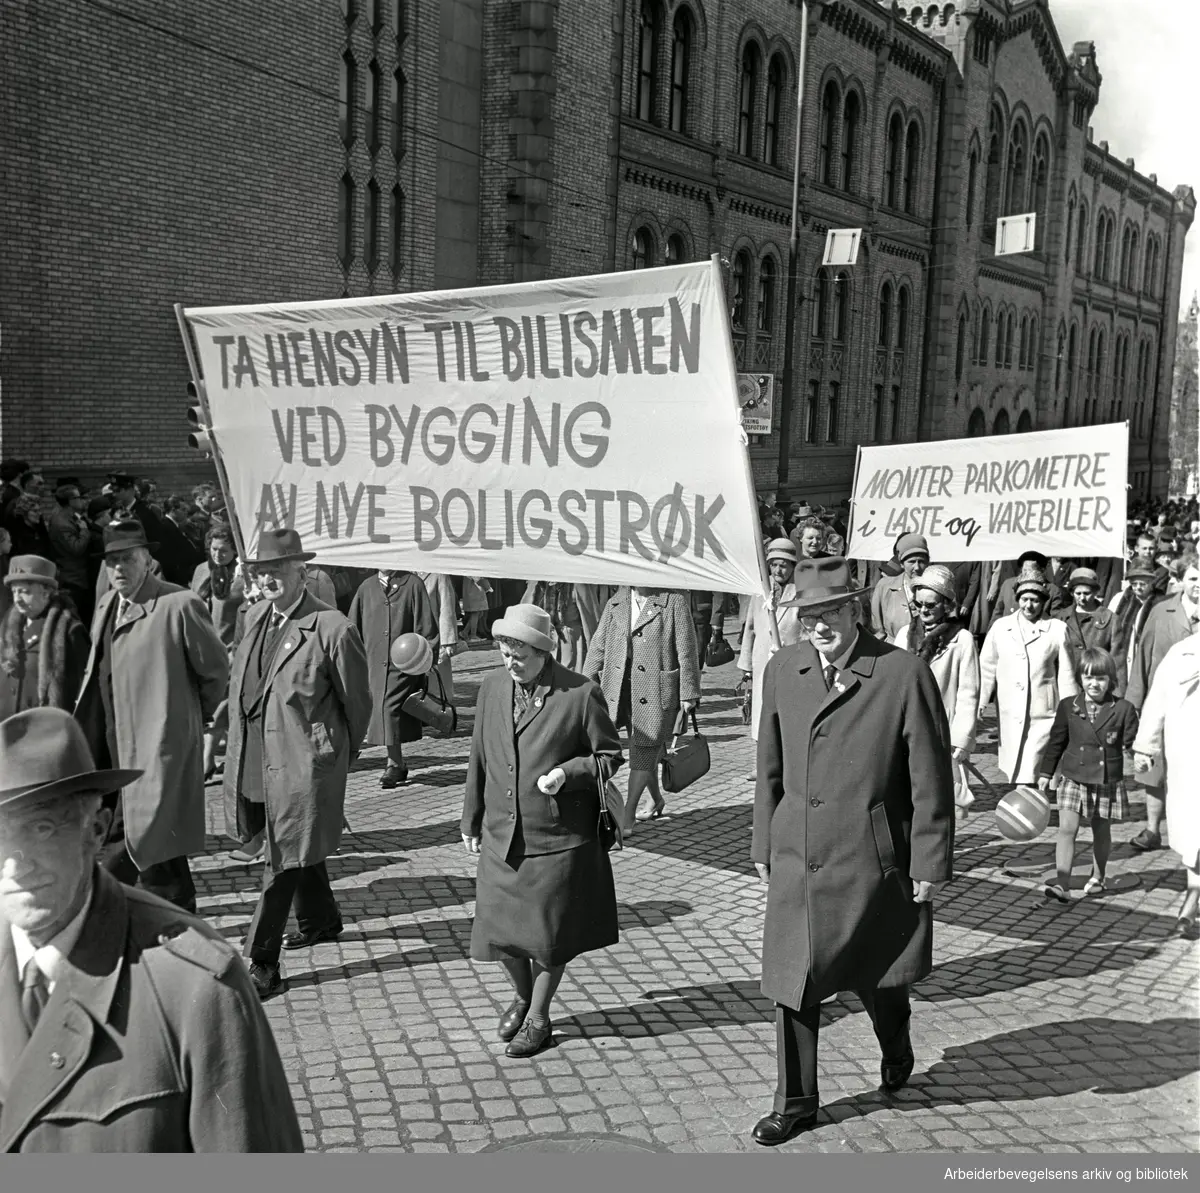 1. mai 1964 i Oslo.Demonstrasjonstoget i Karl Johans gate.Parole: Ta hensyn til bilismen ved bygging av nye boligstrøk.Parole: Monter parkometre i laste og varebiler